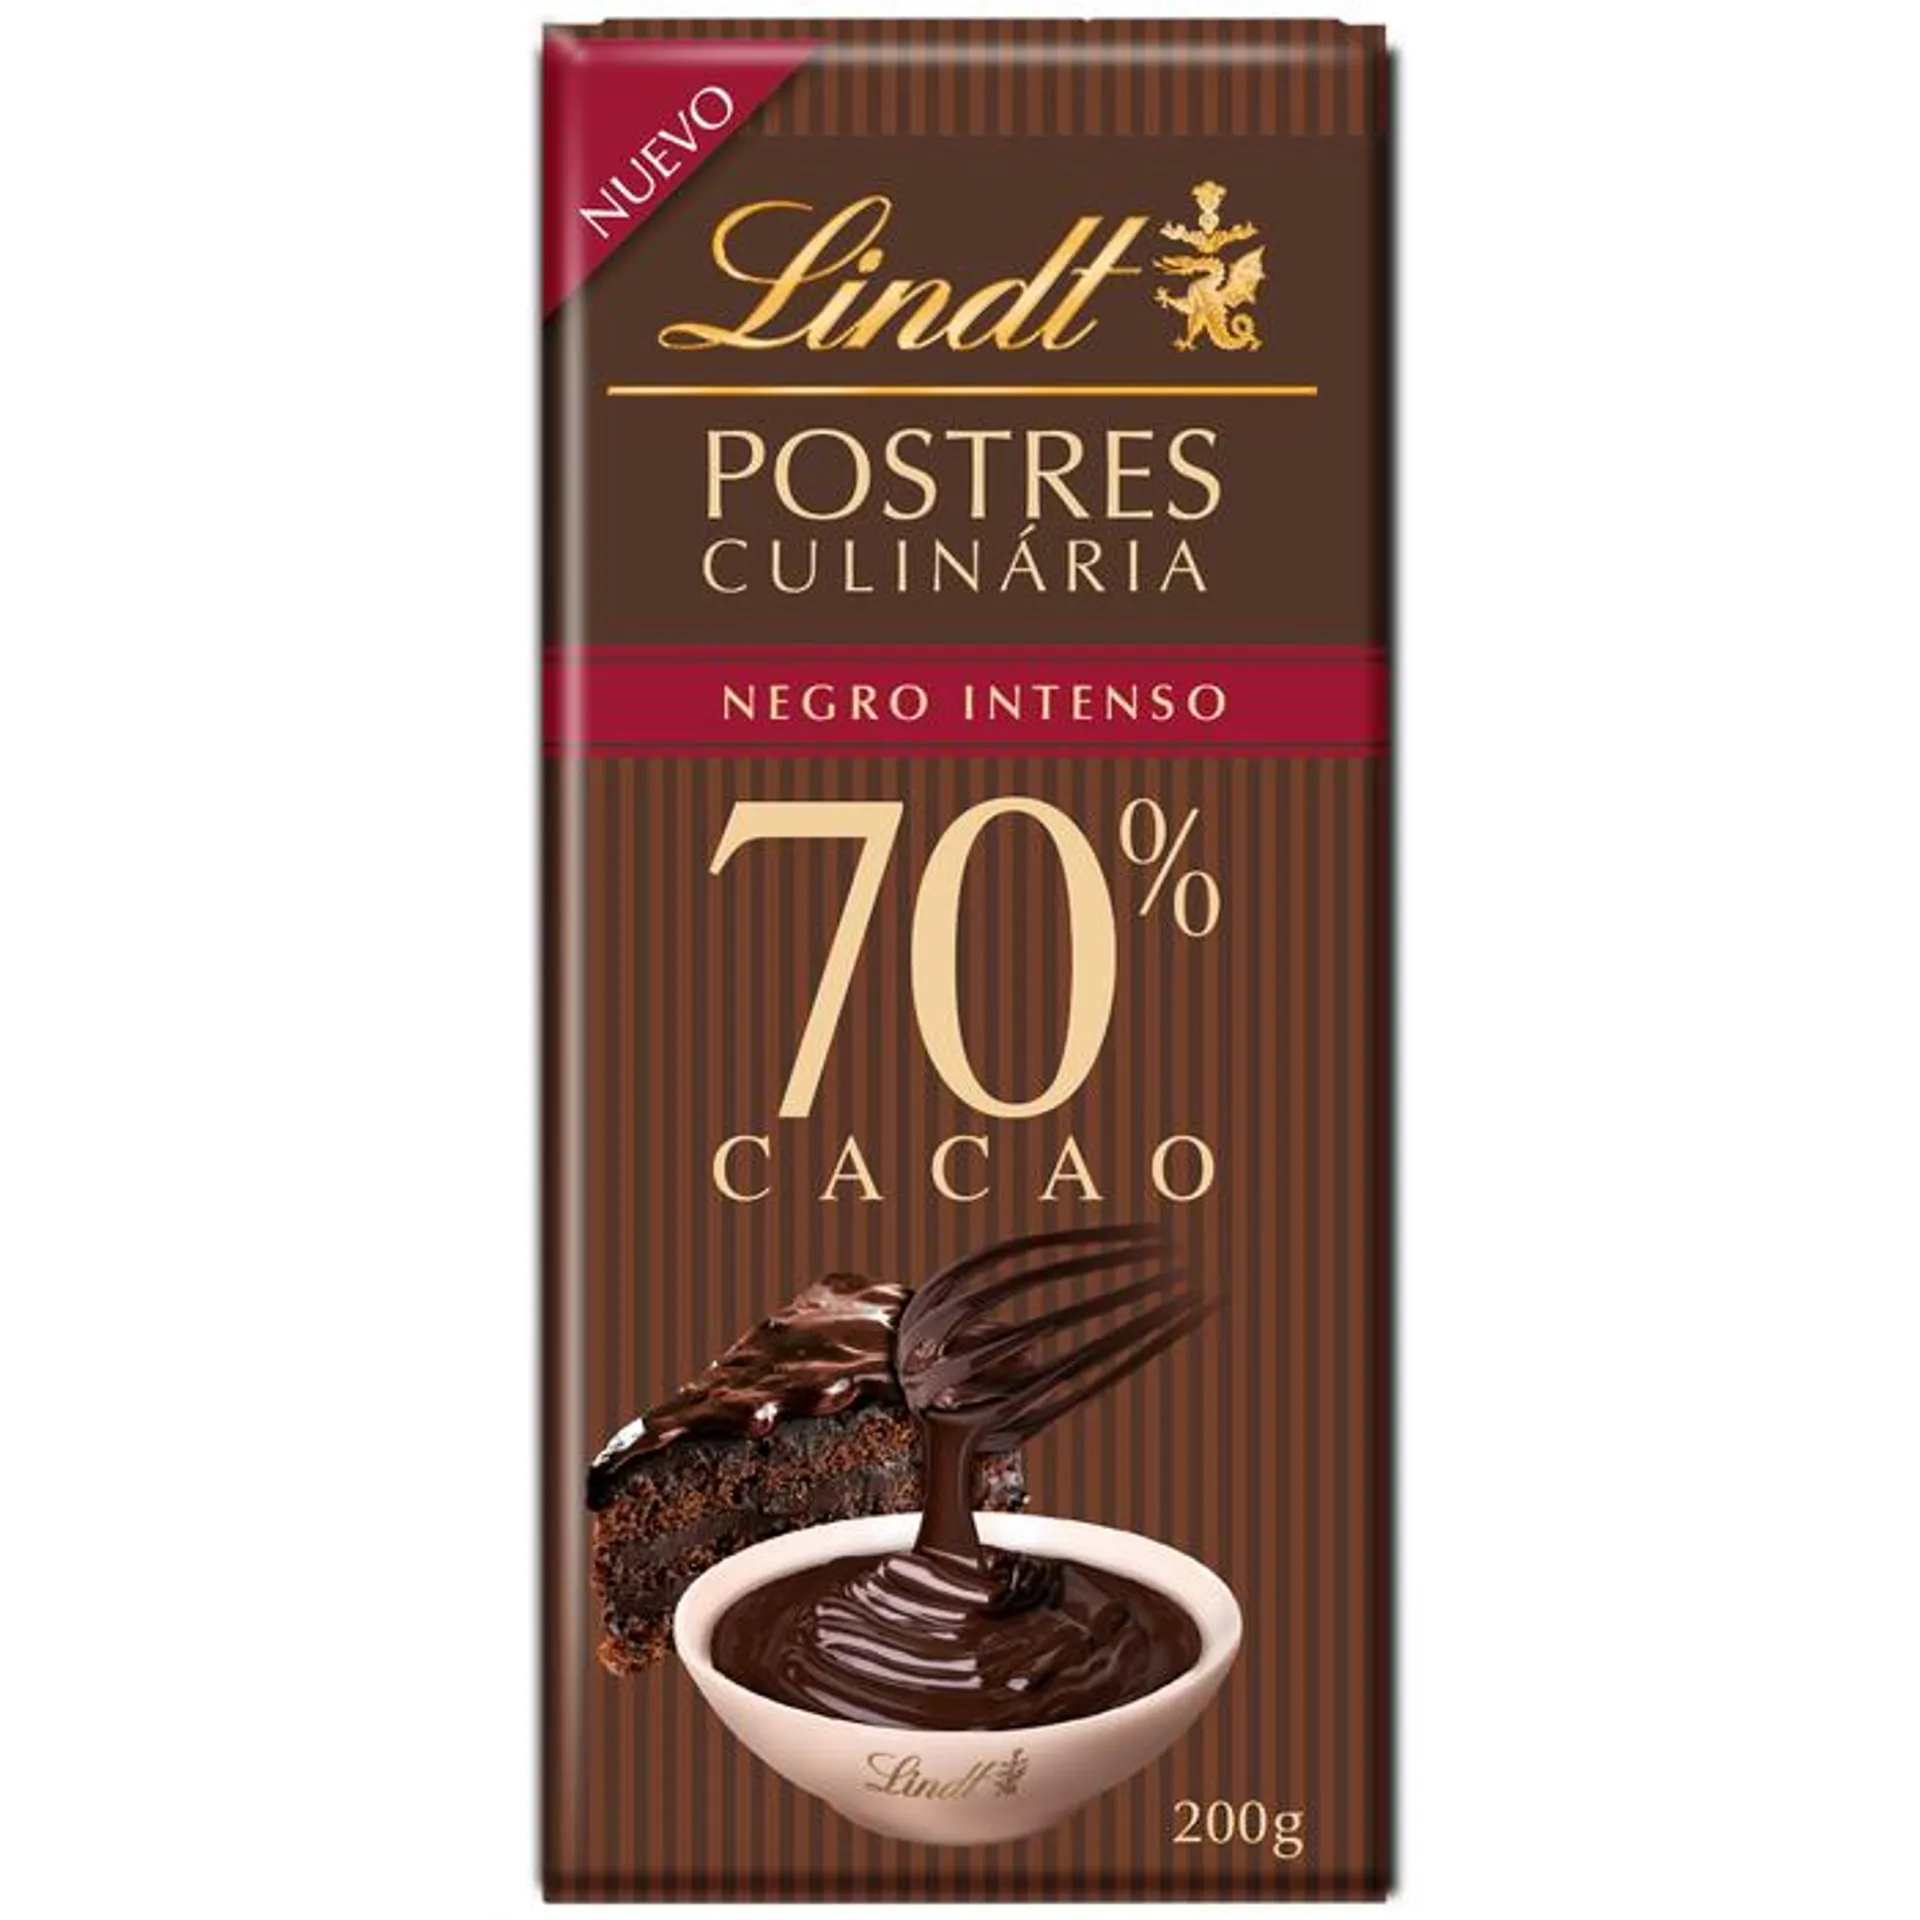 Lindt Postres 70% Cacao 200g